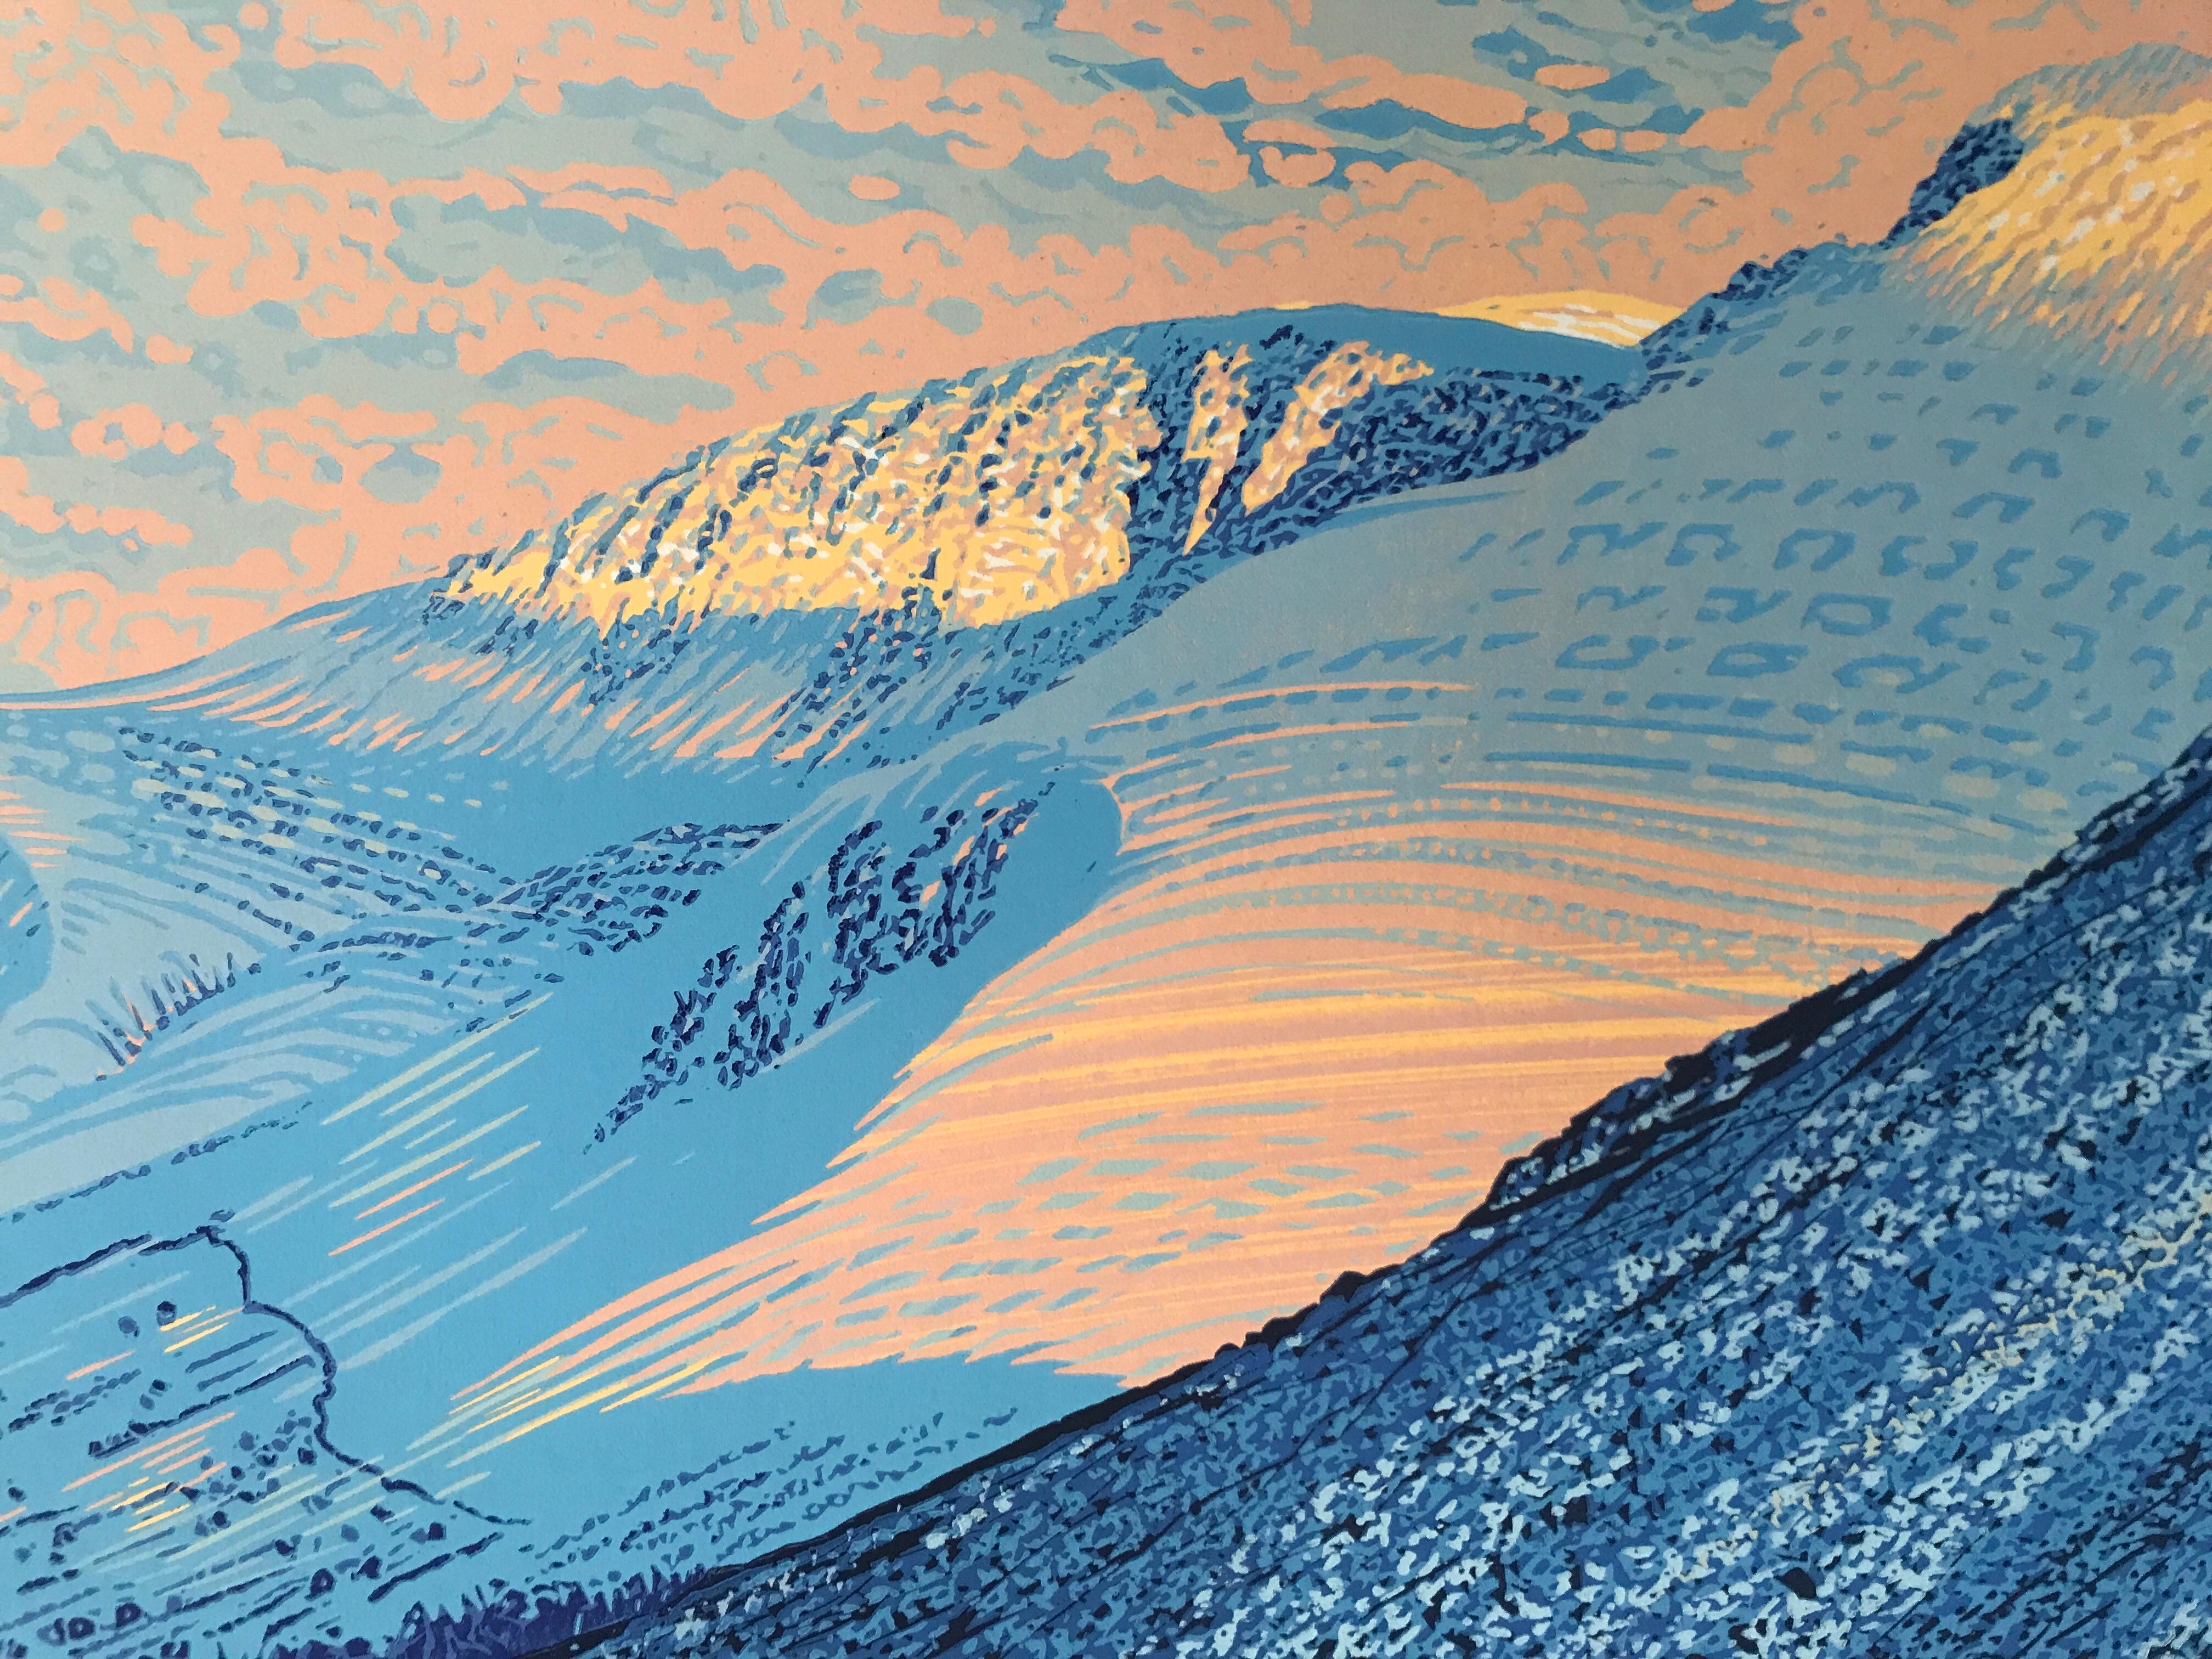 Sun on the Scafells ist ein Druck in limitierter Auflage von Mark A Pearce, inspiriert von den Sea Fells im Lake District.

ZUSÄTZLICHE INFORMATIONEN:
Sonne auf den Scafells von Mark A Pearce
Limitierte Auflage Linoldruck
Auflage von 46
Komplette